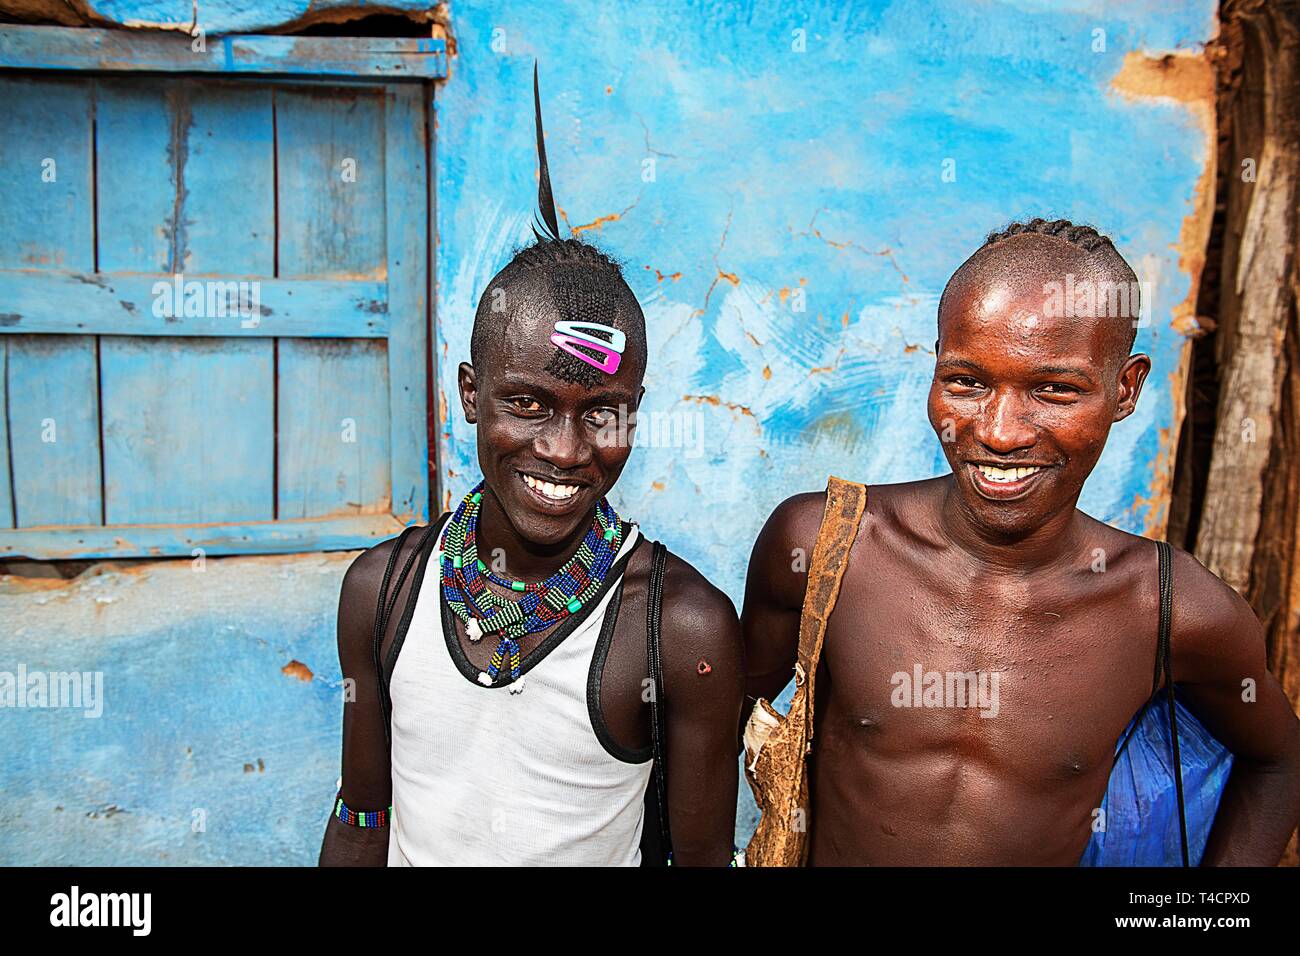 Lachende junge Männer der Hamer ethnische Gruppe mit bunten Haare Klammern und Perlenschmuck, Dimeka, untere Omo Valley, Omo Gebiet südlich Äthiopien Stockfoto